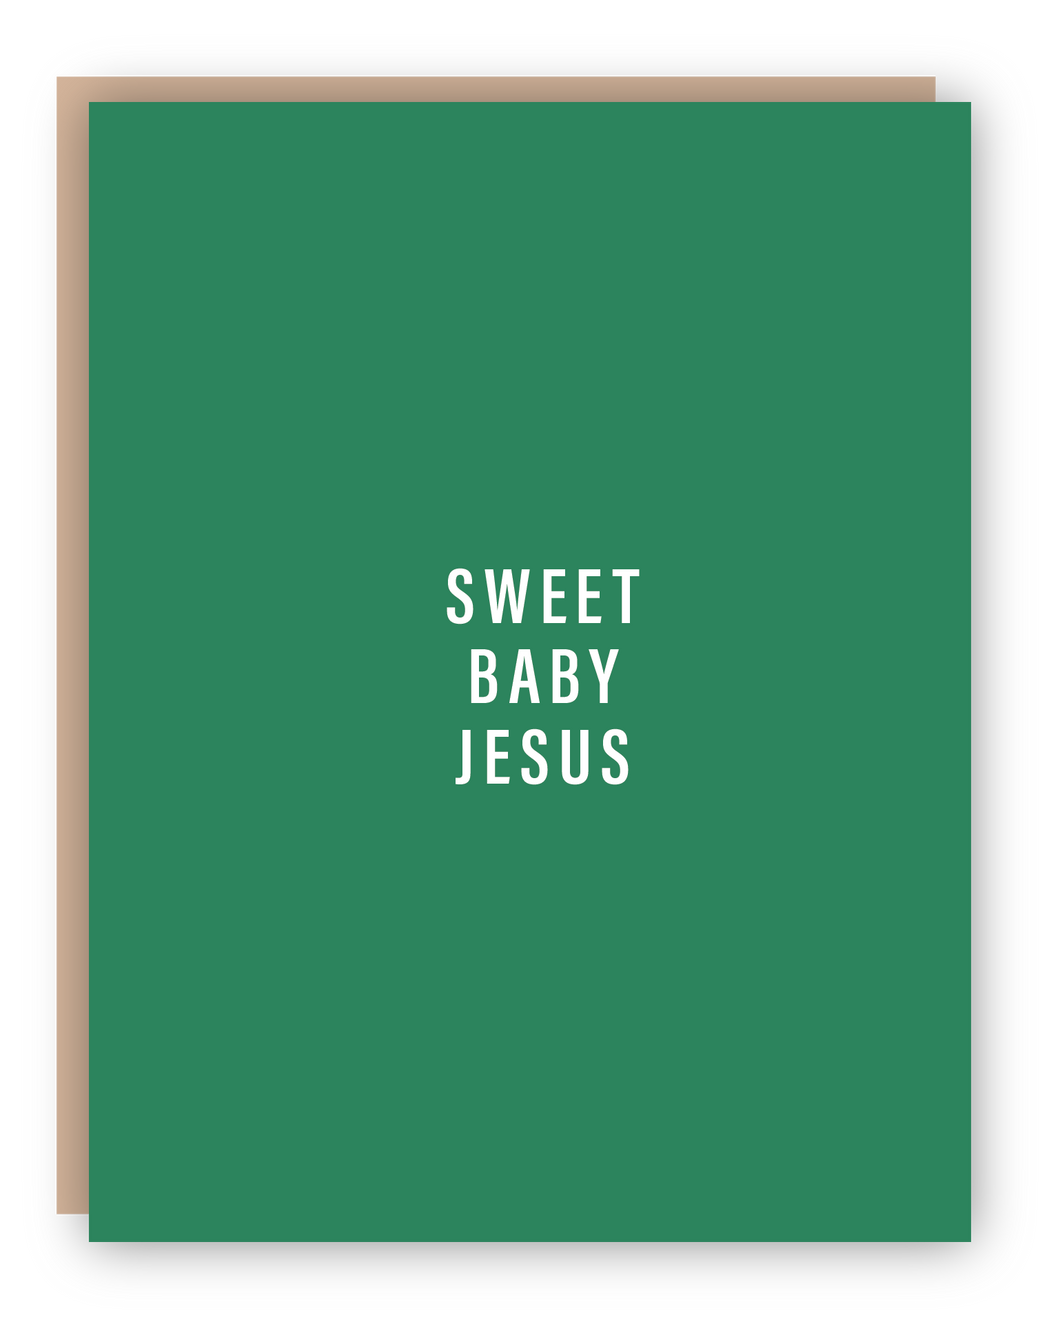 SWEET BABY JESUS